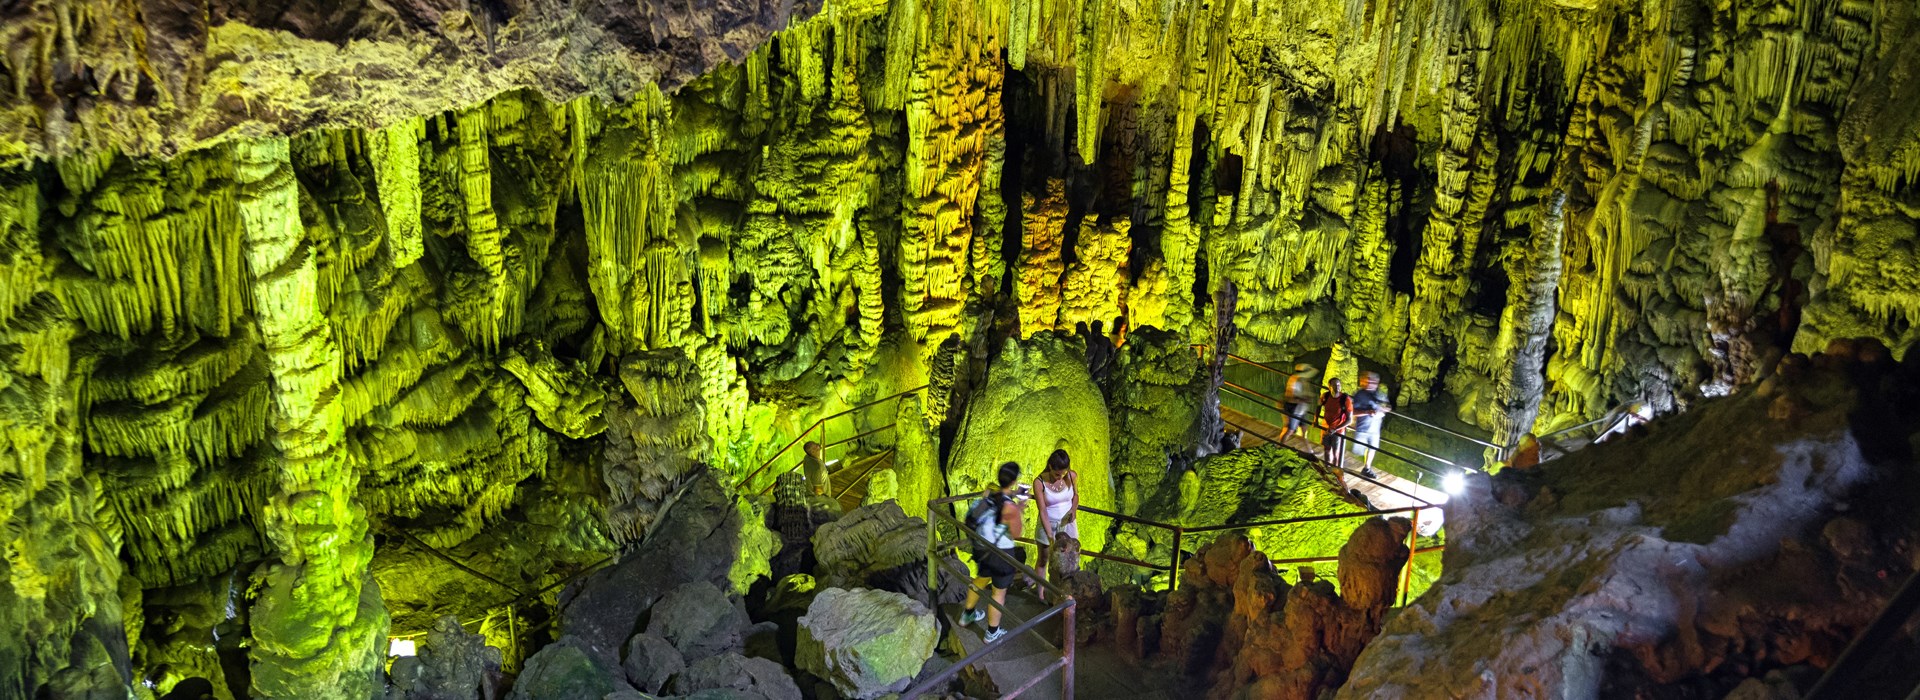 Visiter La grotte de Psychro - Crète